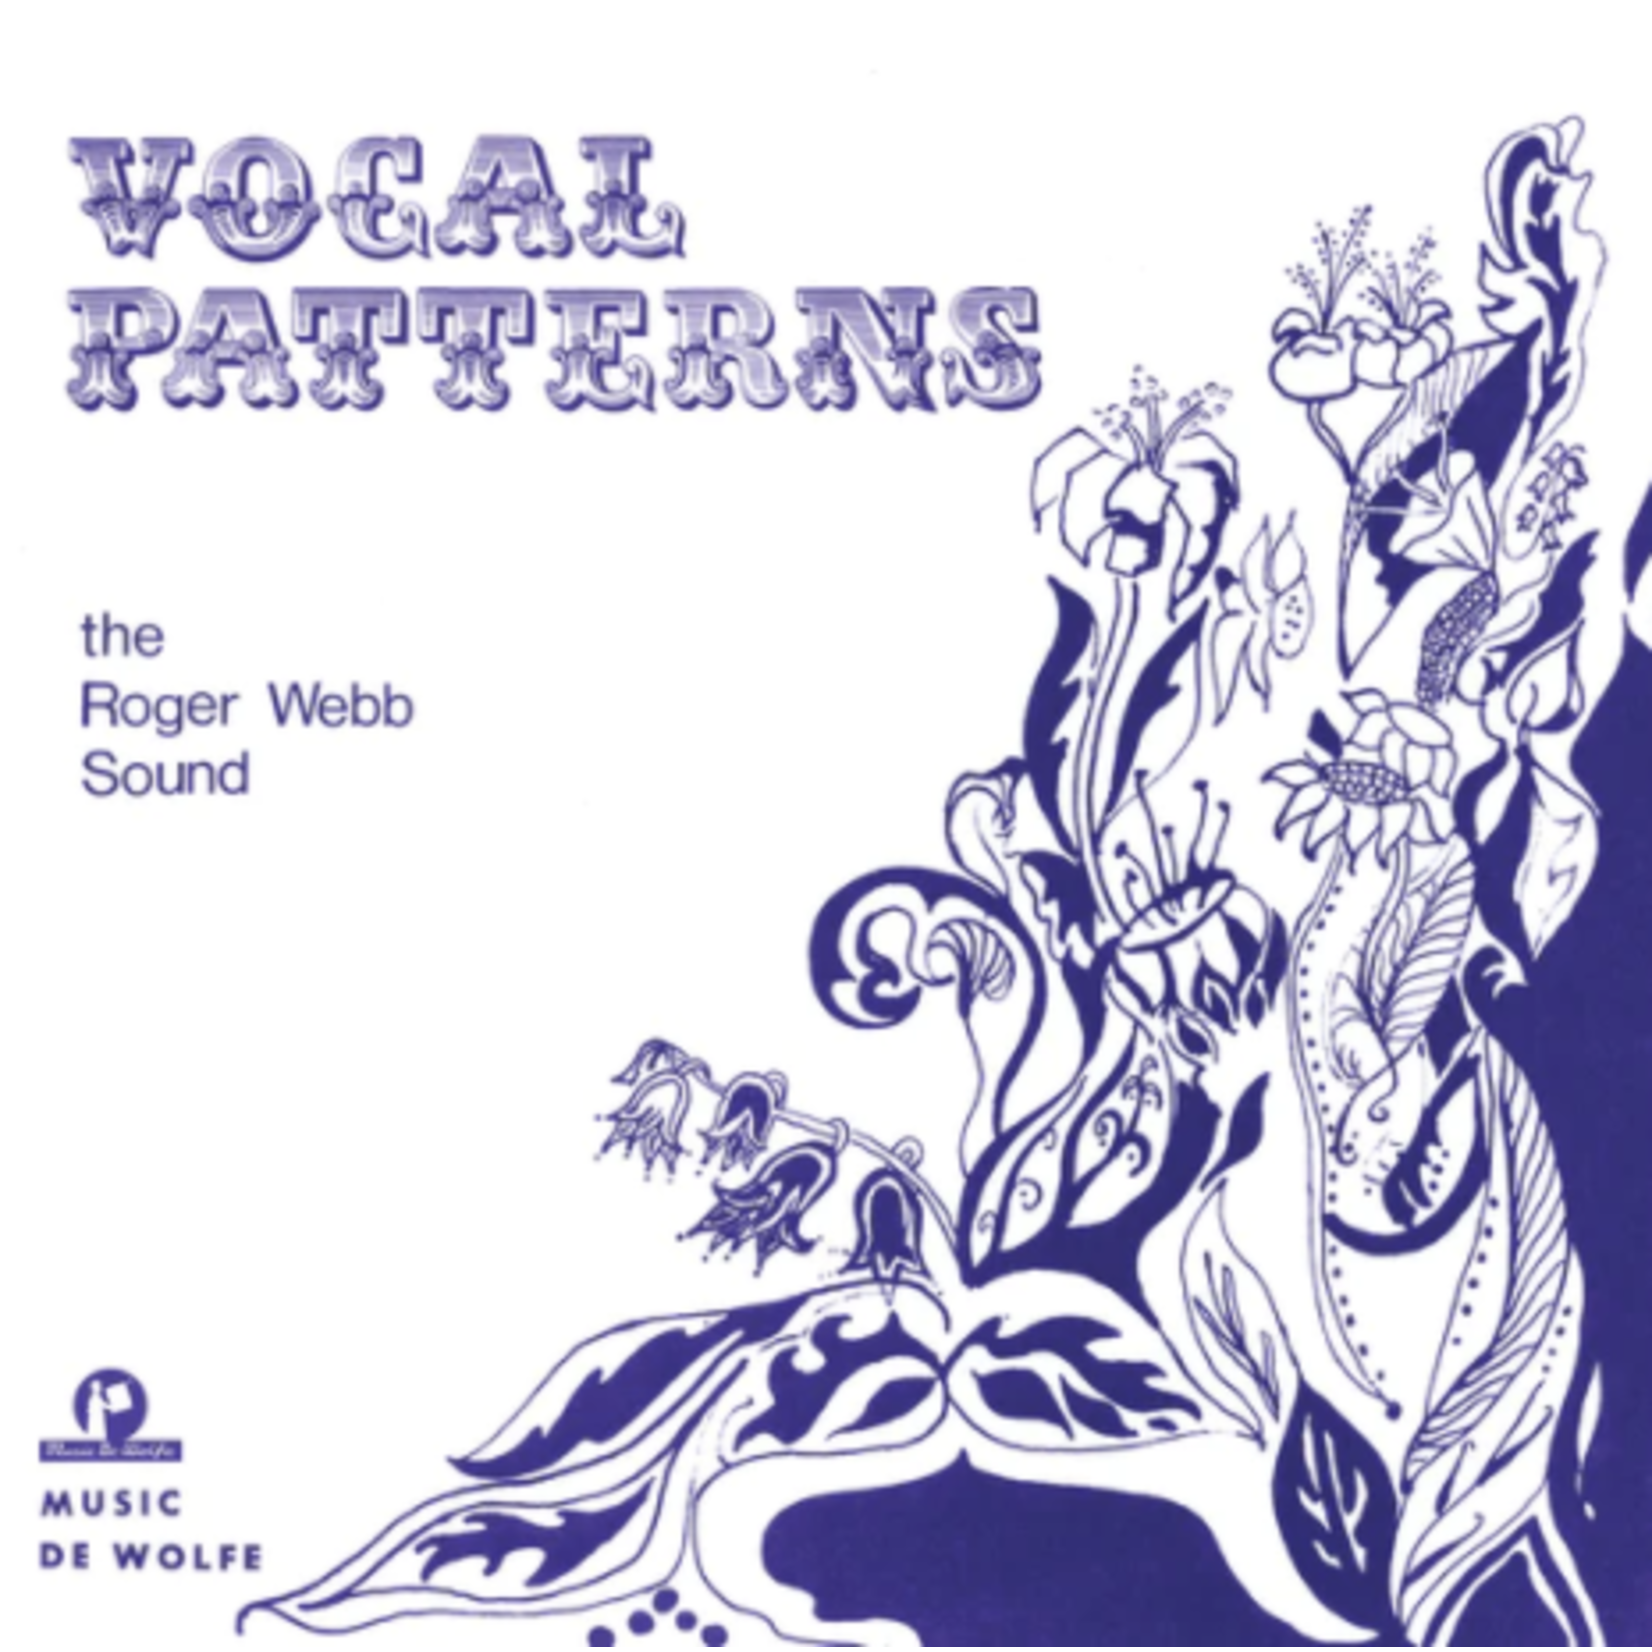 Dewolfe Roger Webb Sound - Vocal Patterns (LP) [White/Violet]